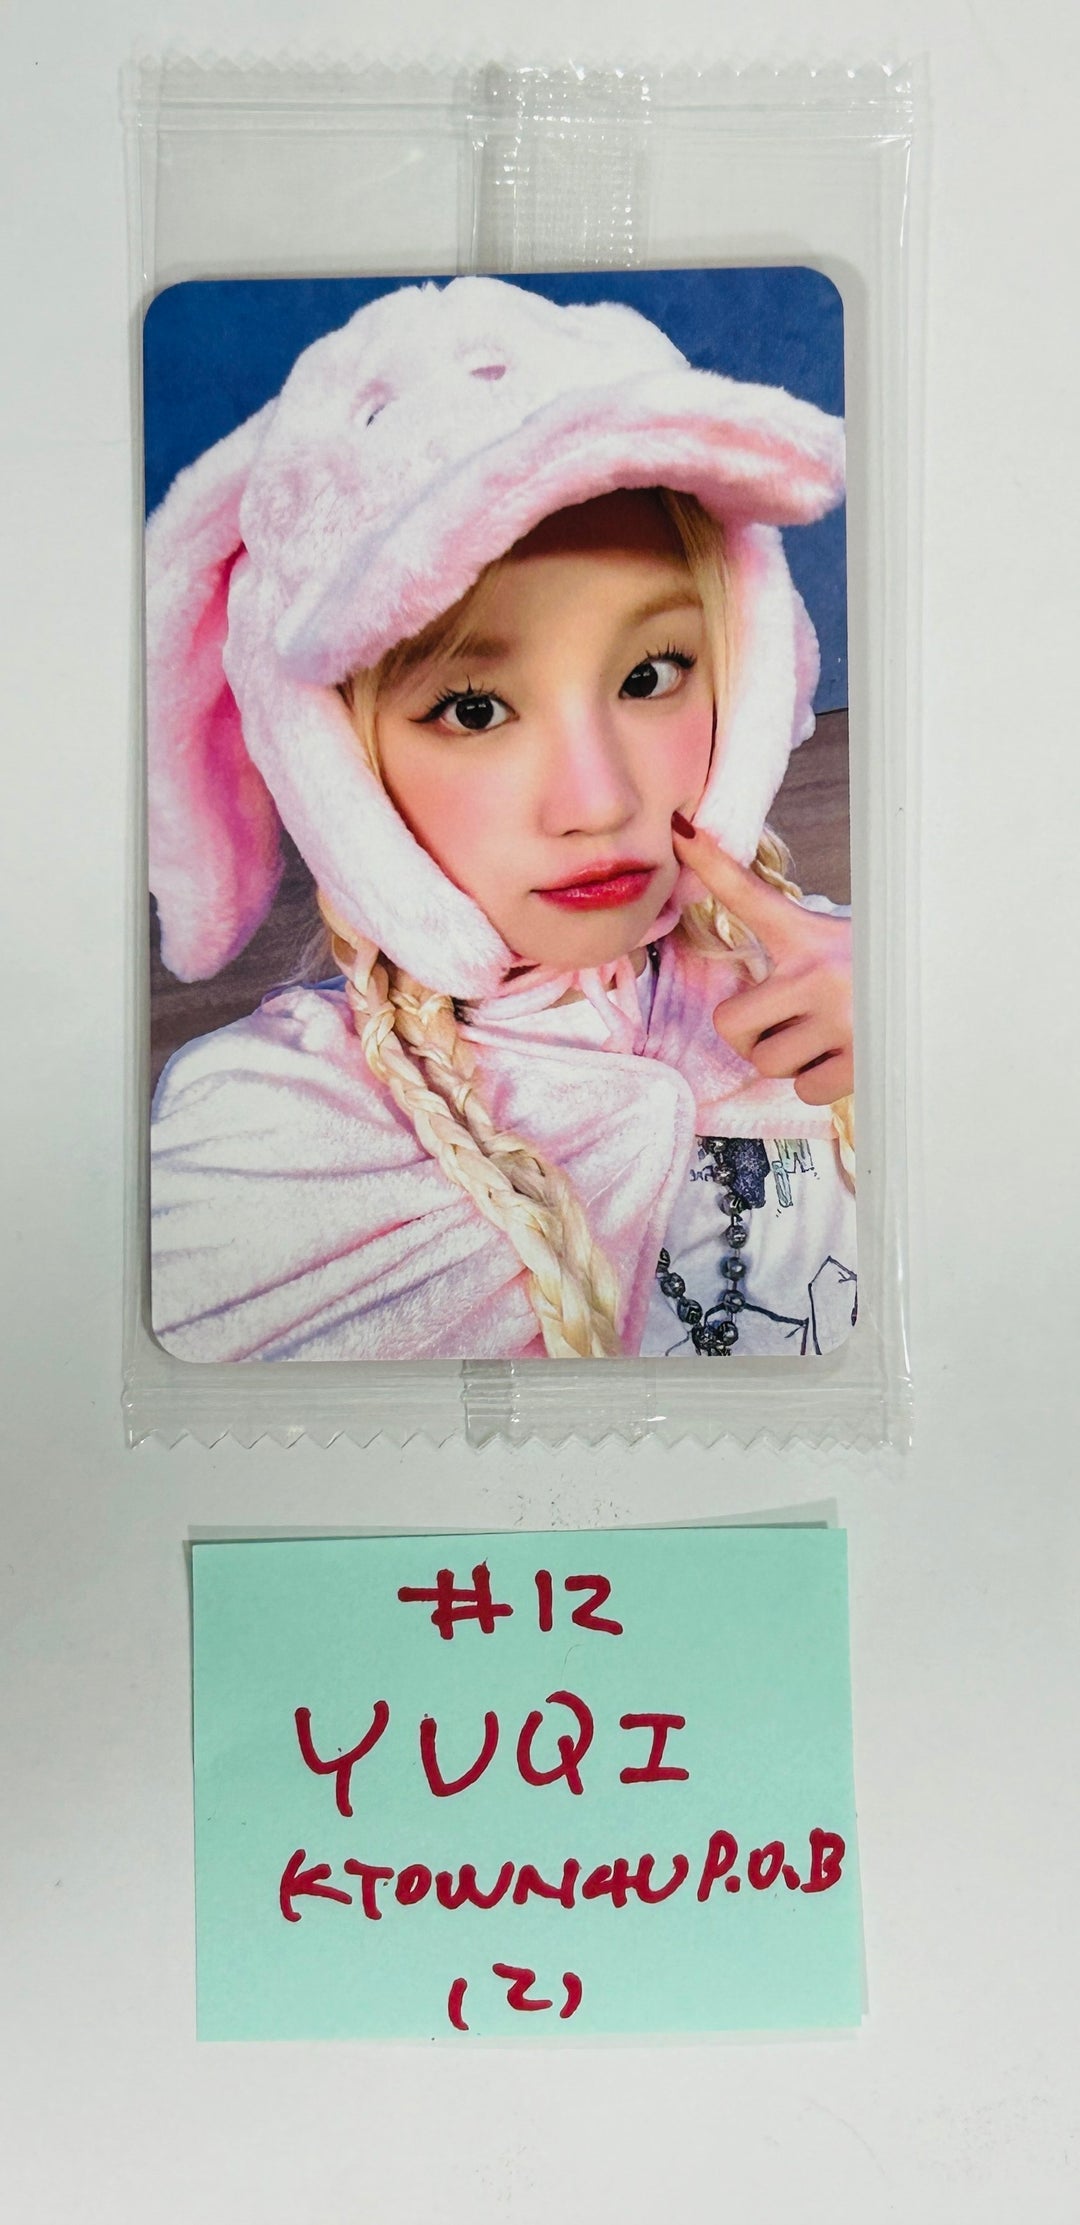 YUQI (Of (G) I-DLE) "YUQ1" - Ktown4U Pre-Order Benefit Photocard [24.4.26]